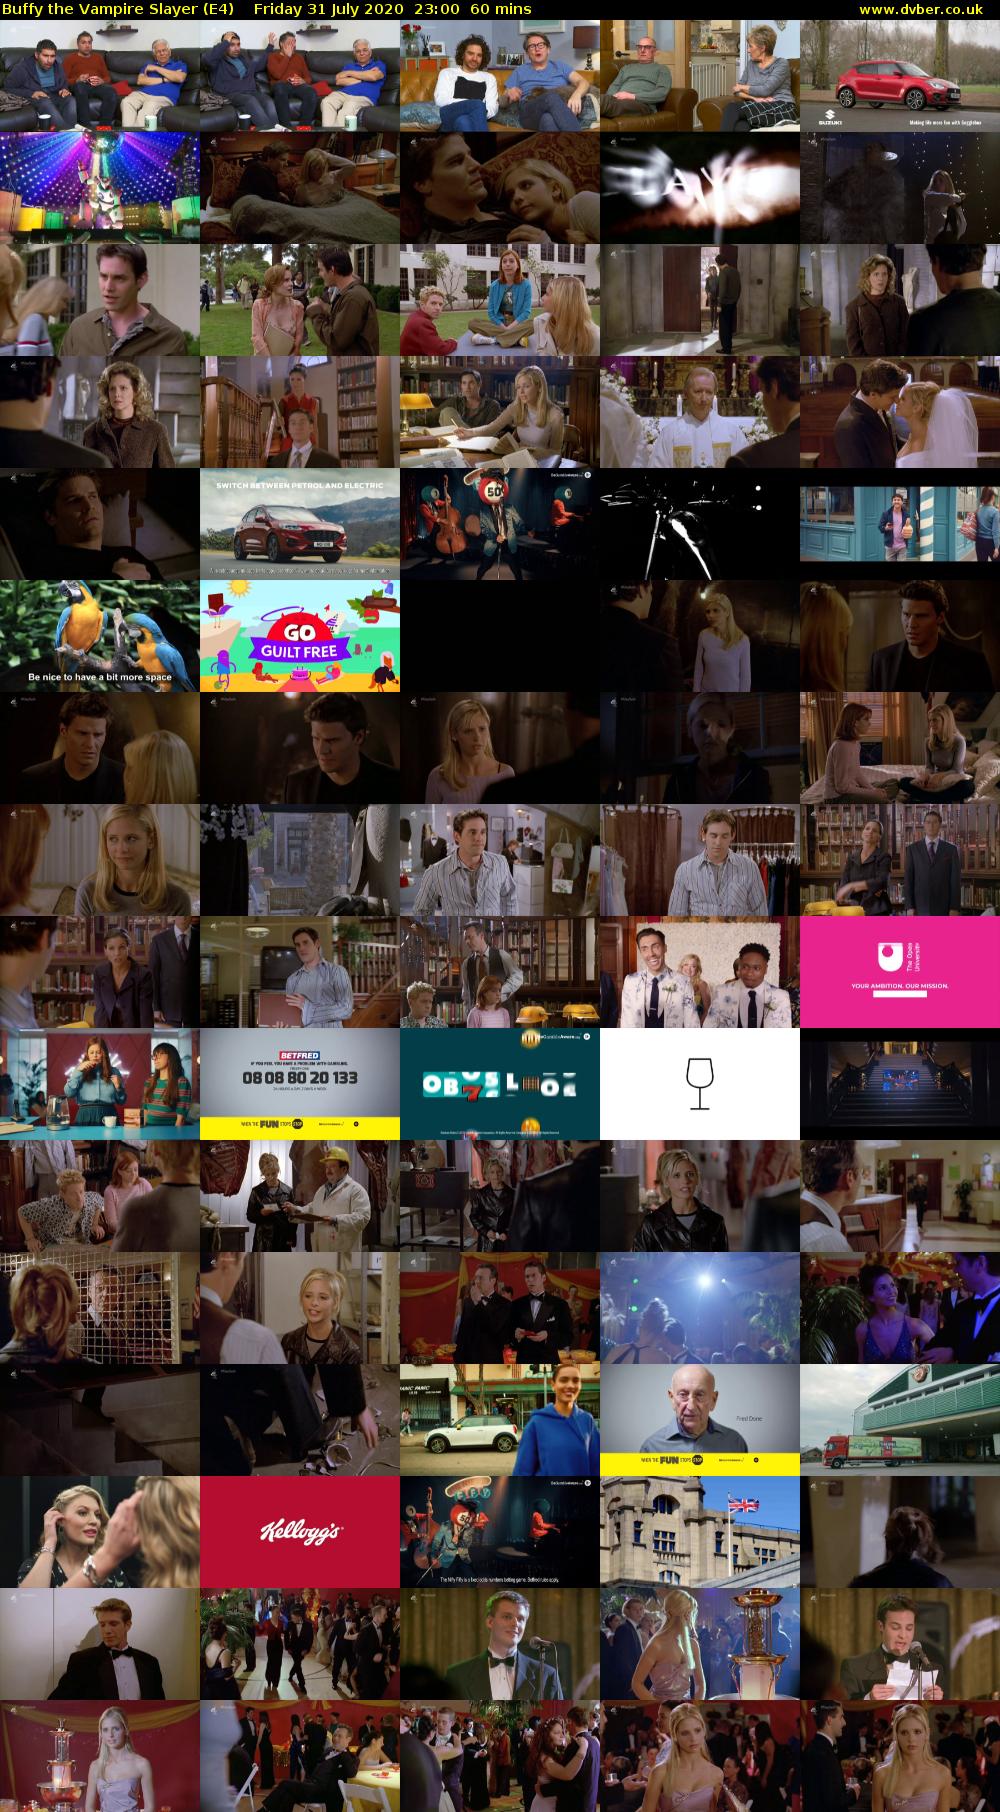 Buffy the Vampire Slayer (E4) Friday 31 July 2020 23:00 - 00:00